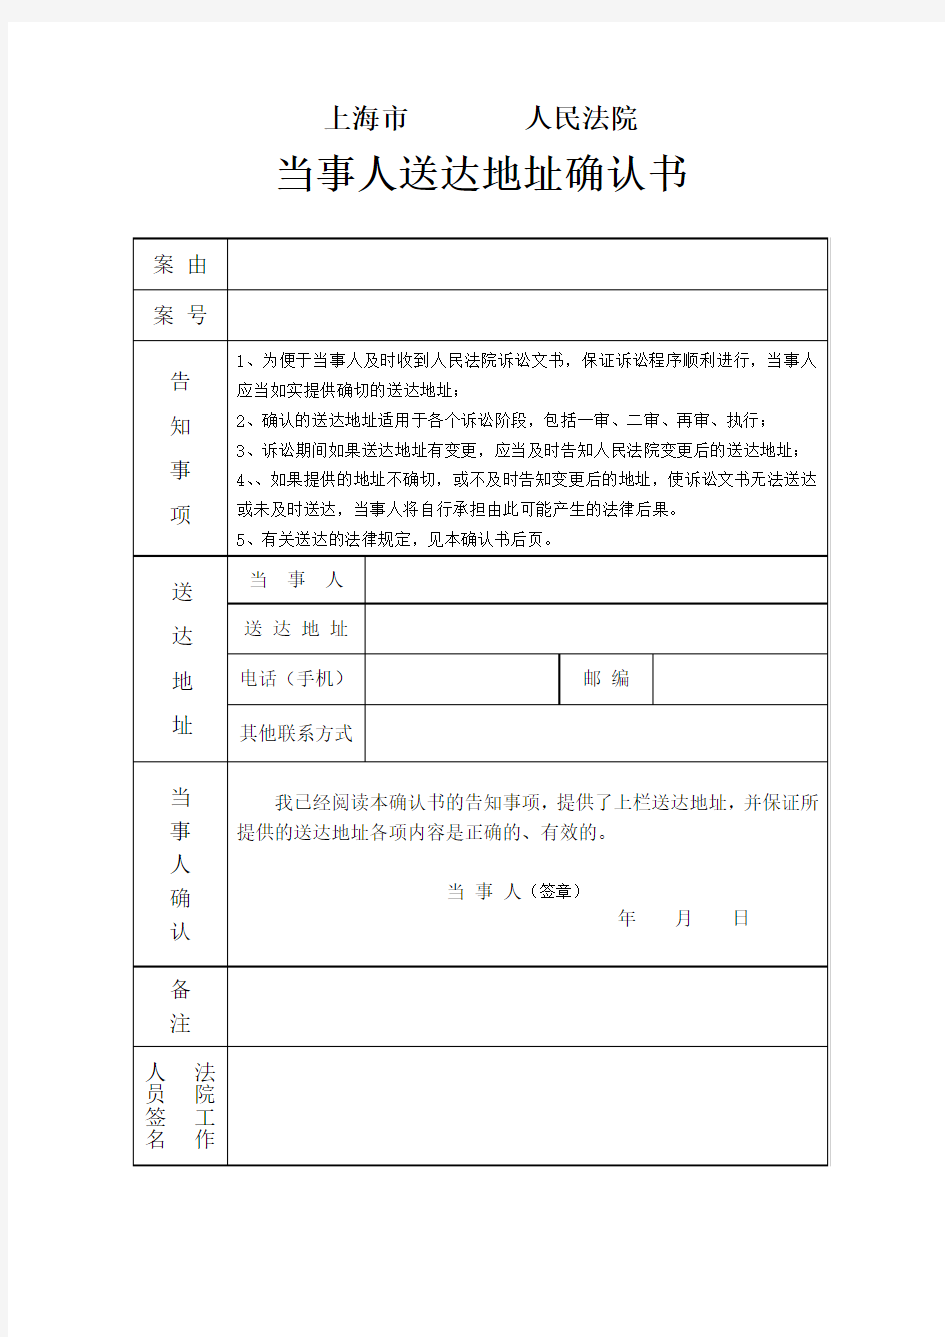 上海法院当事人送达地址确认书